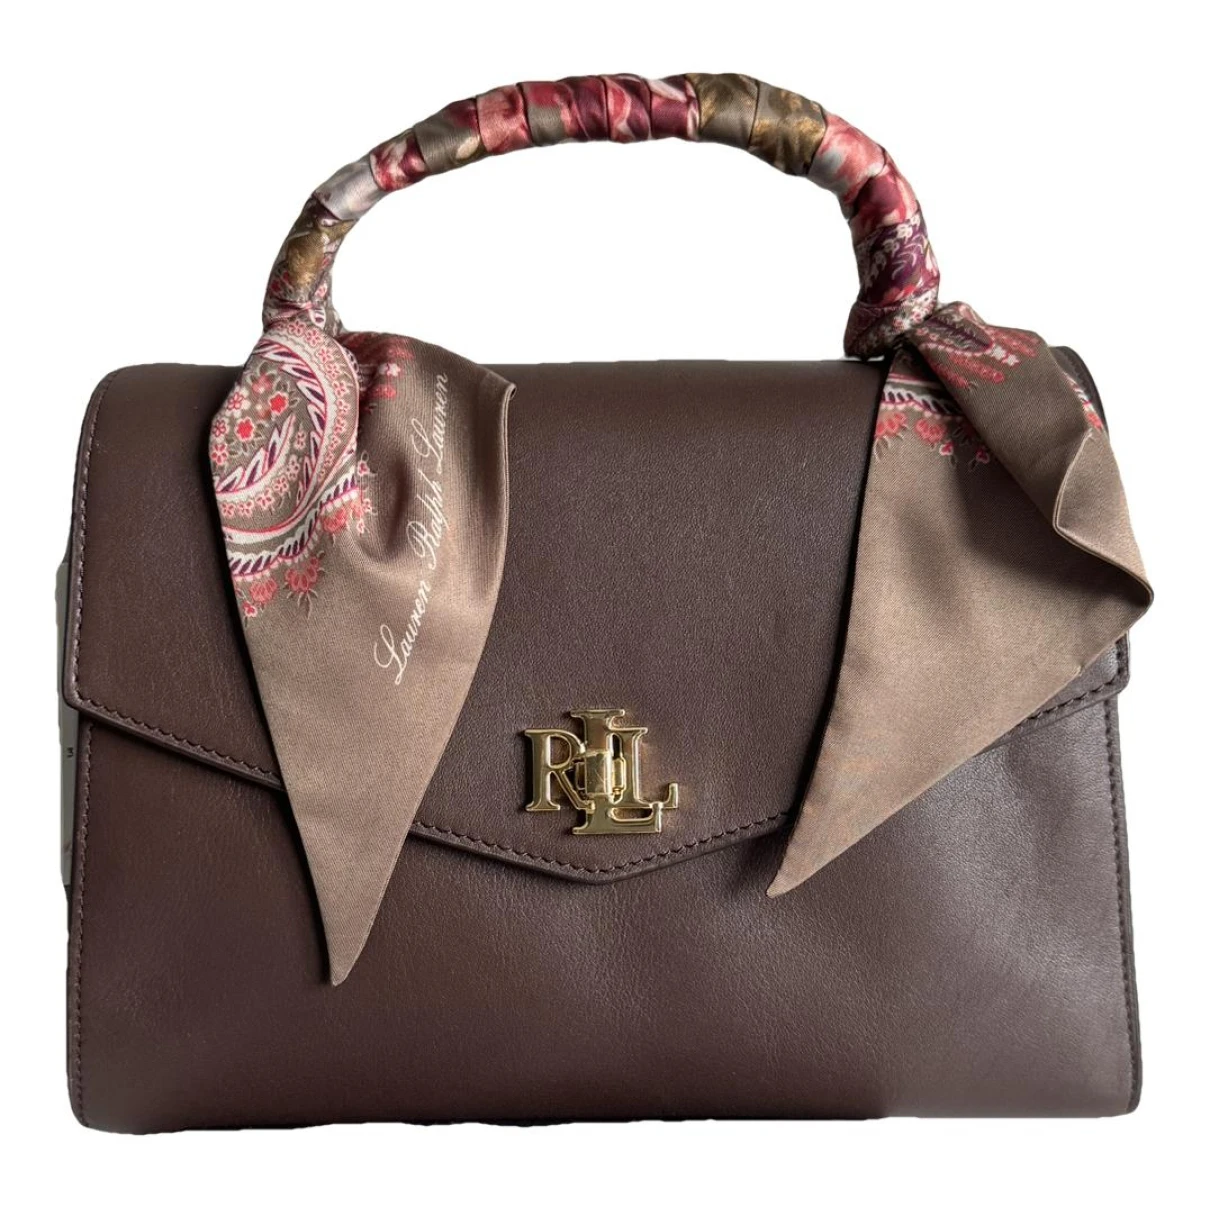 Pre-owned Lauren Ralph Lauren Leather Handbag In Burgundy